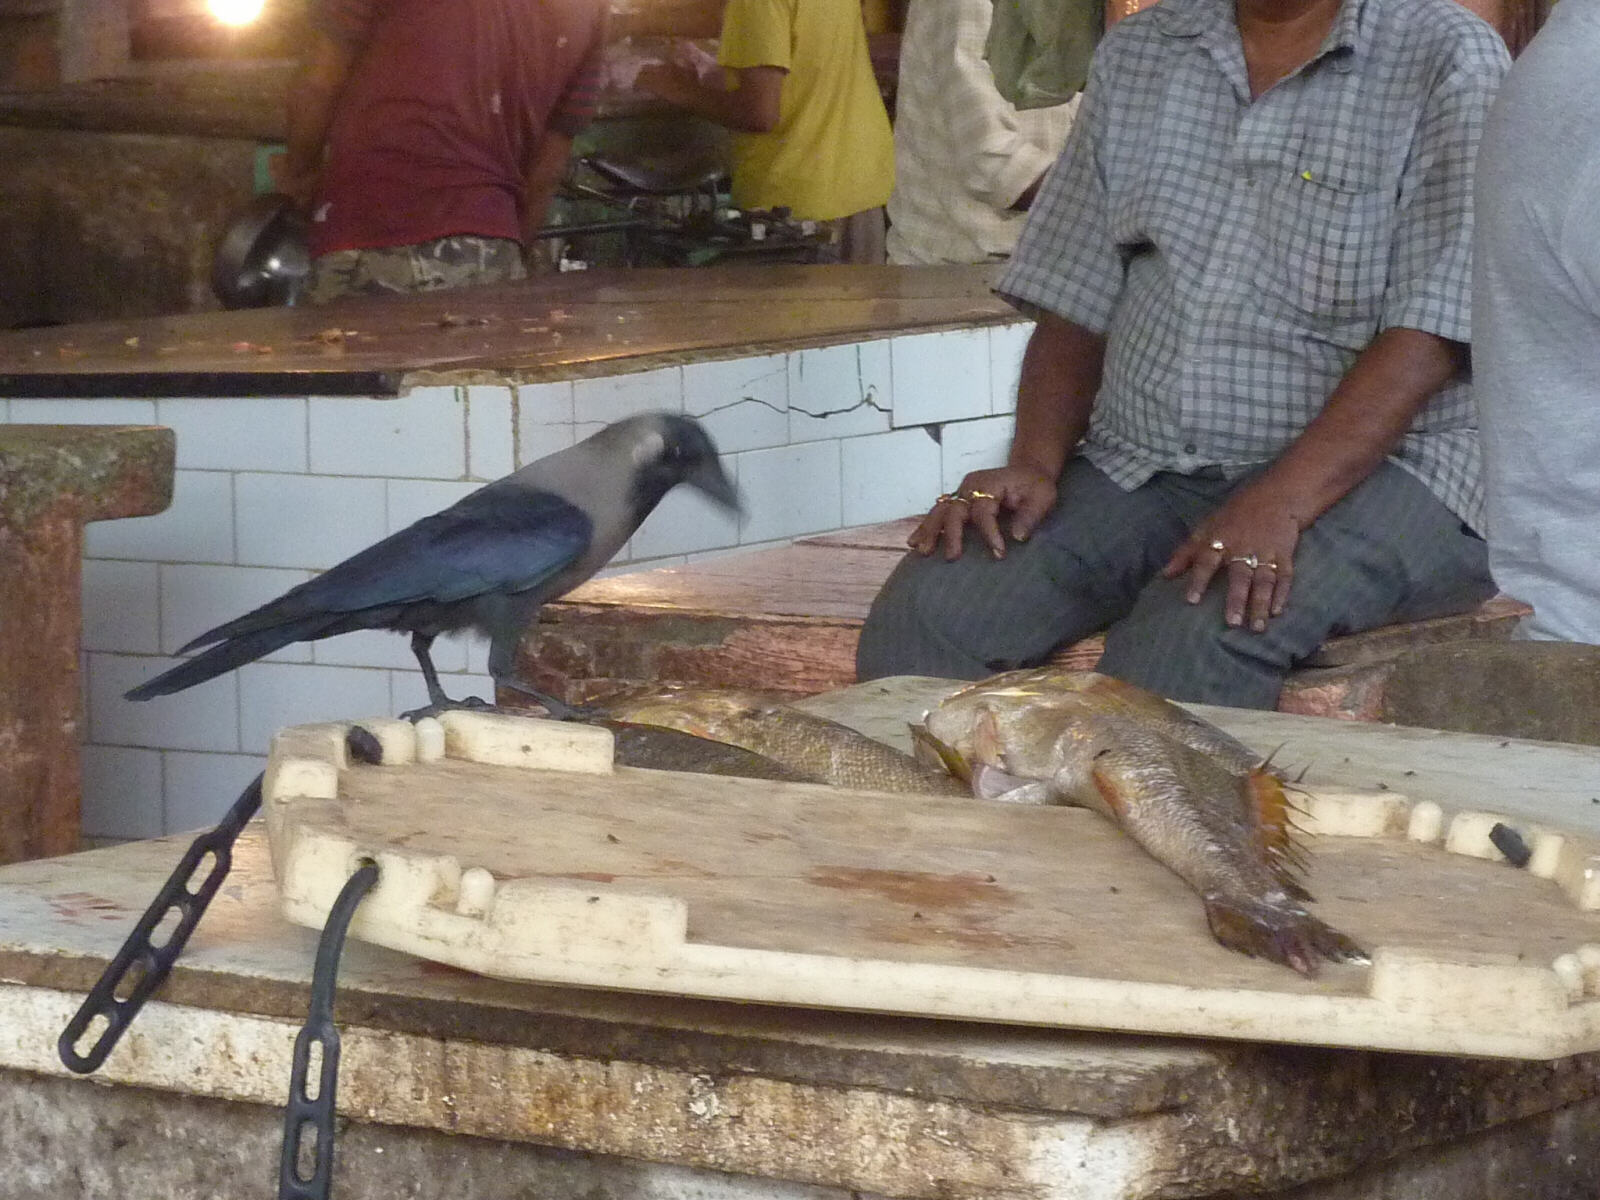 A crow in the fish market in Calcutta